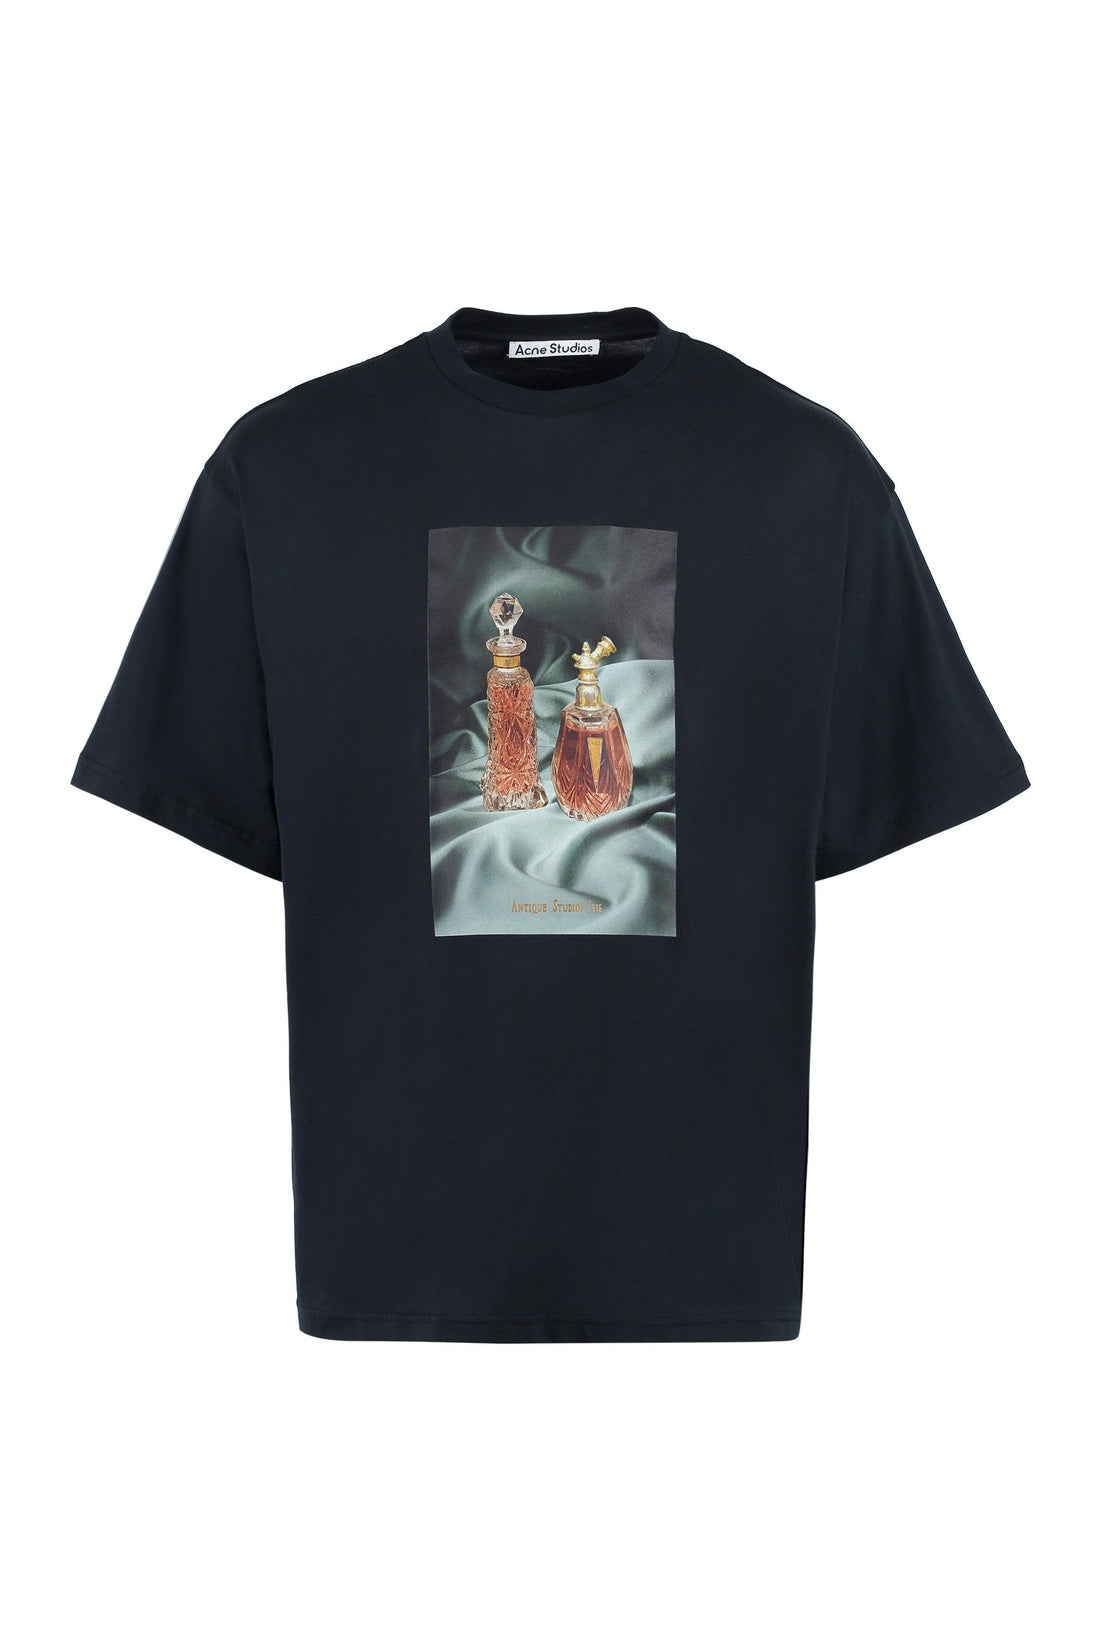 Acne Studios-OUTLET-SALE-Printed cotton T-shirt-ARCHIVIST